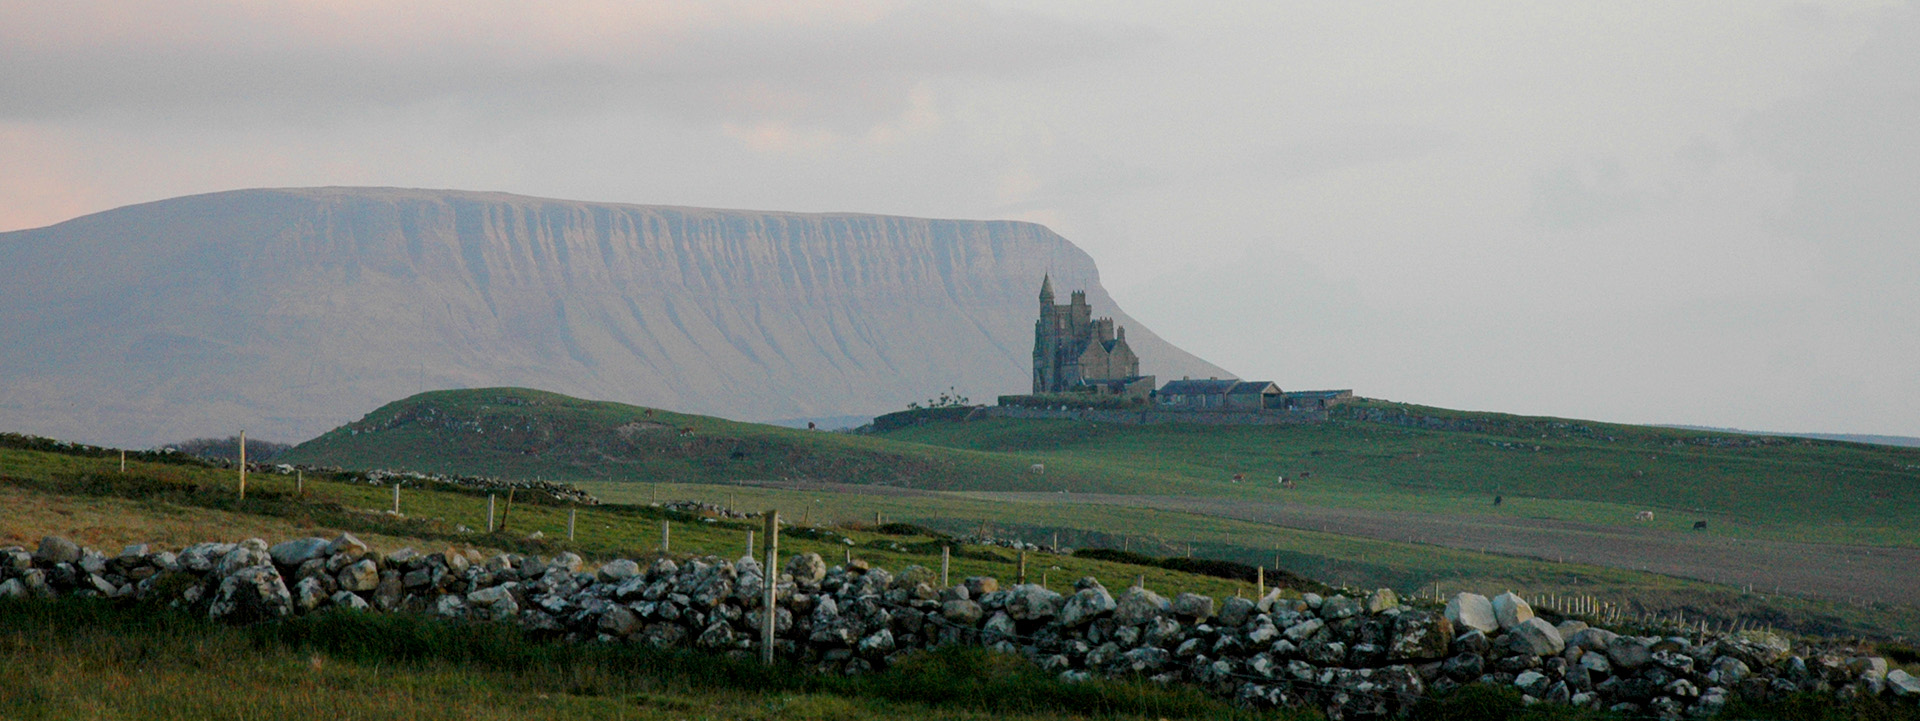 Eine Burg steht in der malerischen Landschaft der irischen Küste.